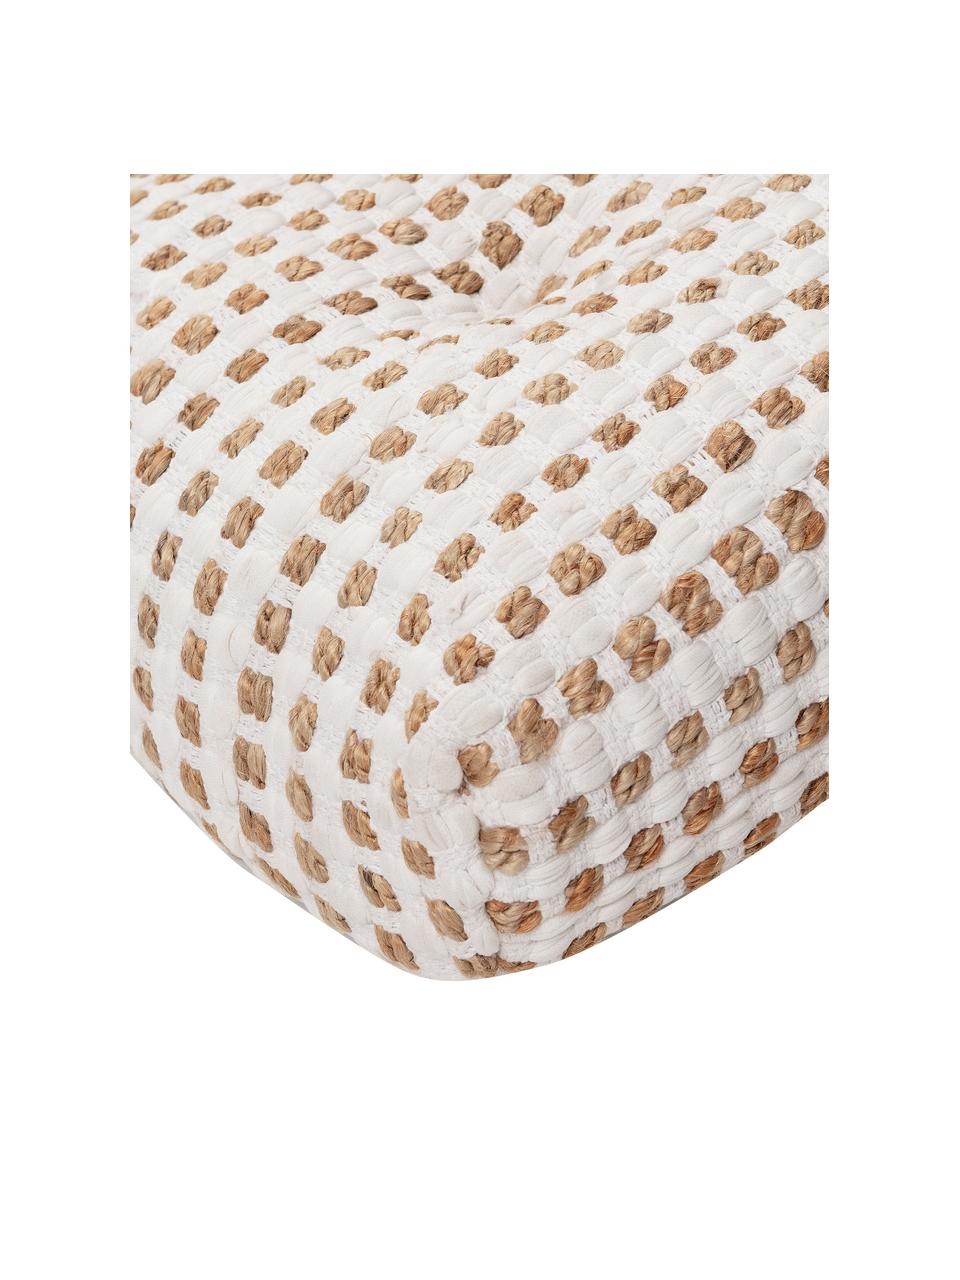 Cojín de suelo de algodón y yute Fiesta, estilo boho, Tapizado: 55% algodón chindi, 45% y, Blanco, beige, An 120 x Al 13 cm